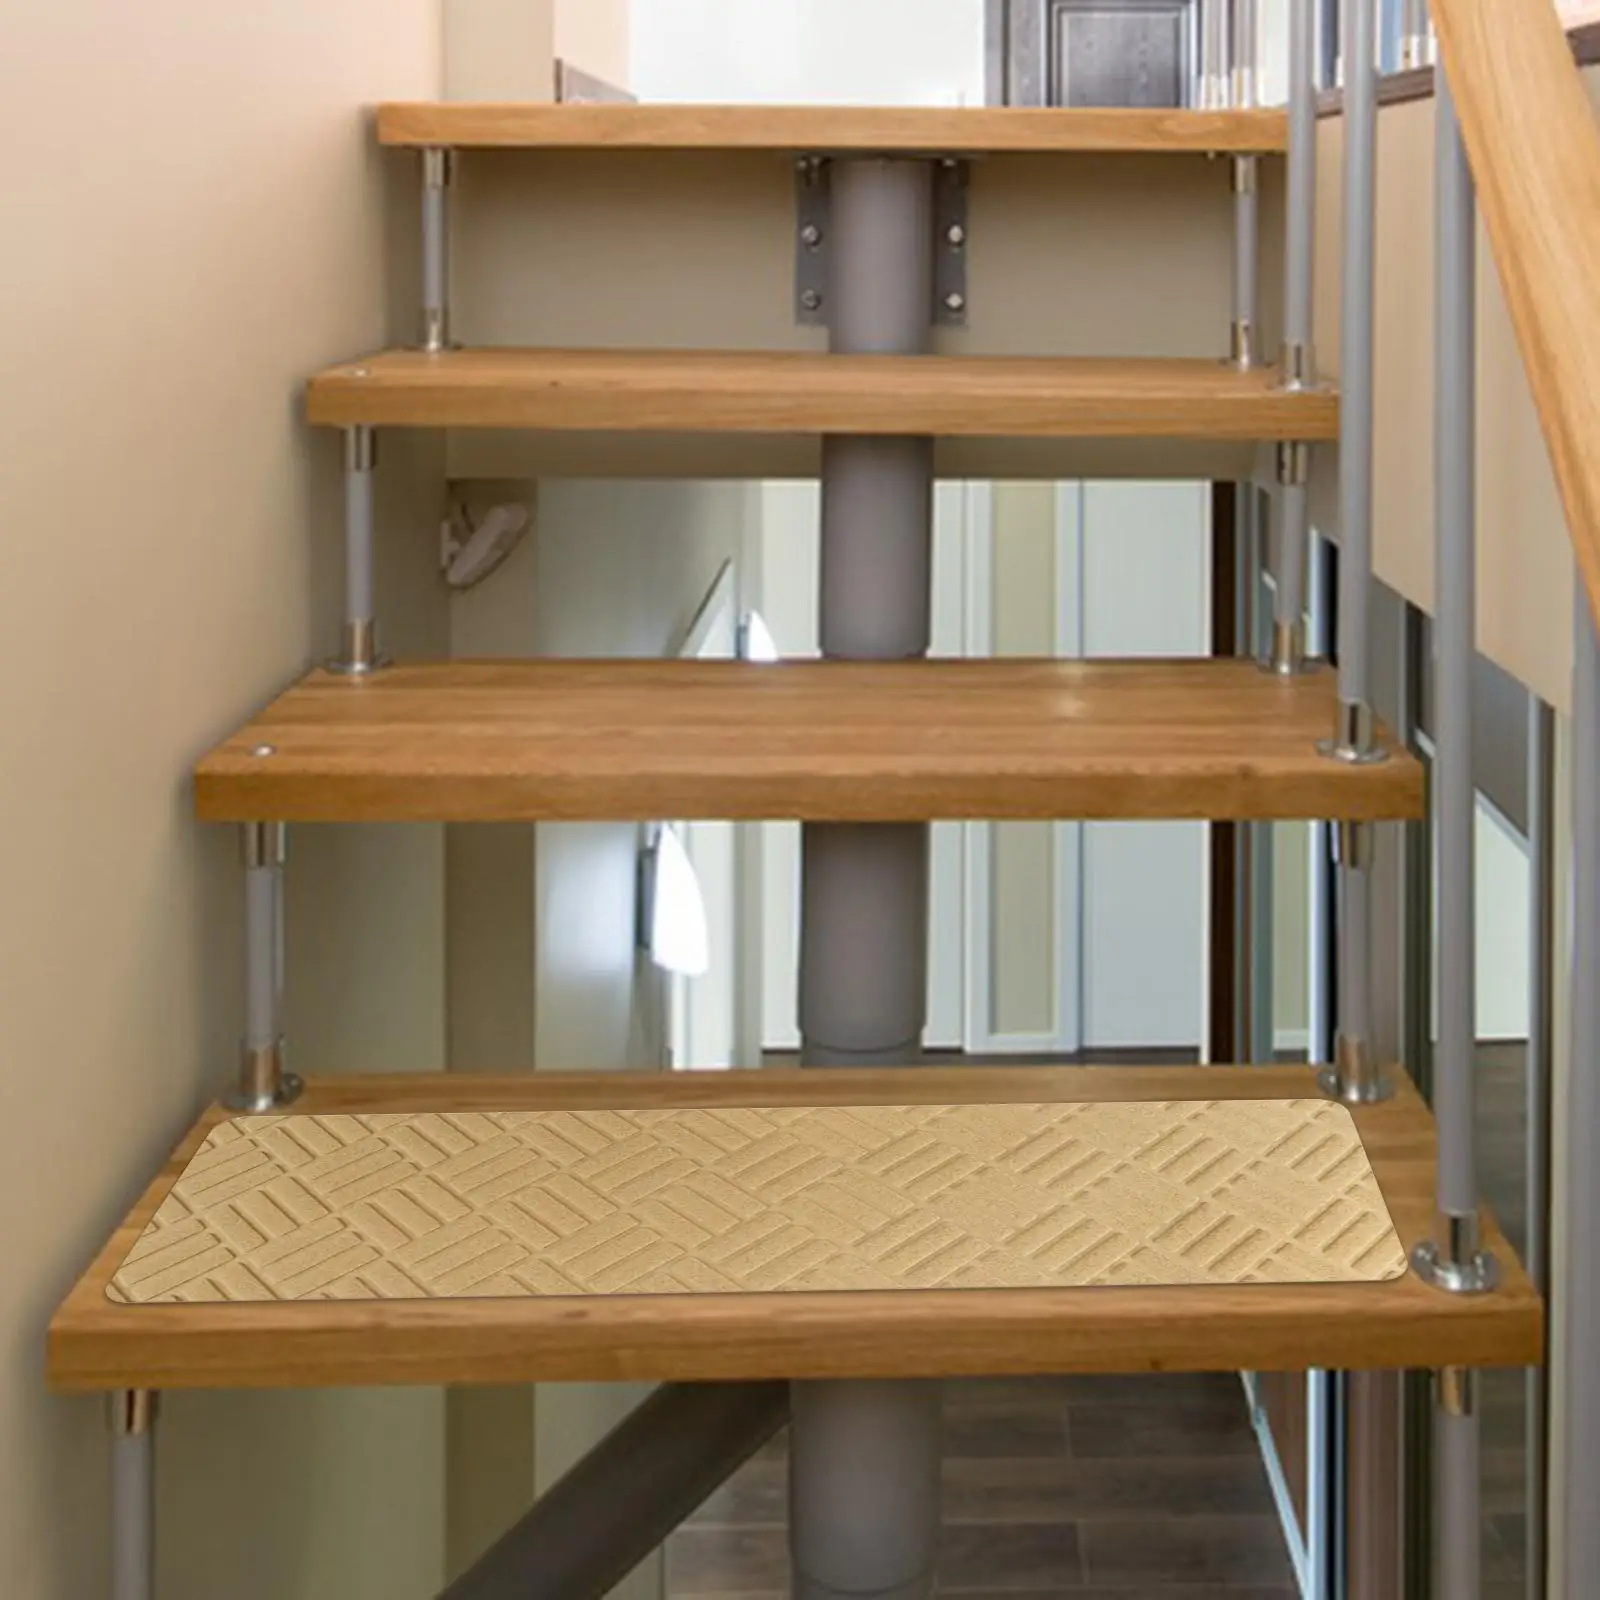 Stair Runner Carpet Stair Treads Soft Edging Stair Rugs Stair Carpet Treads Strips for Bedroom Restaurant Living Room